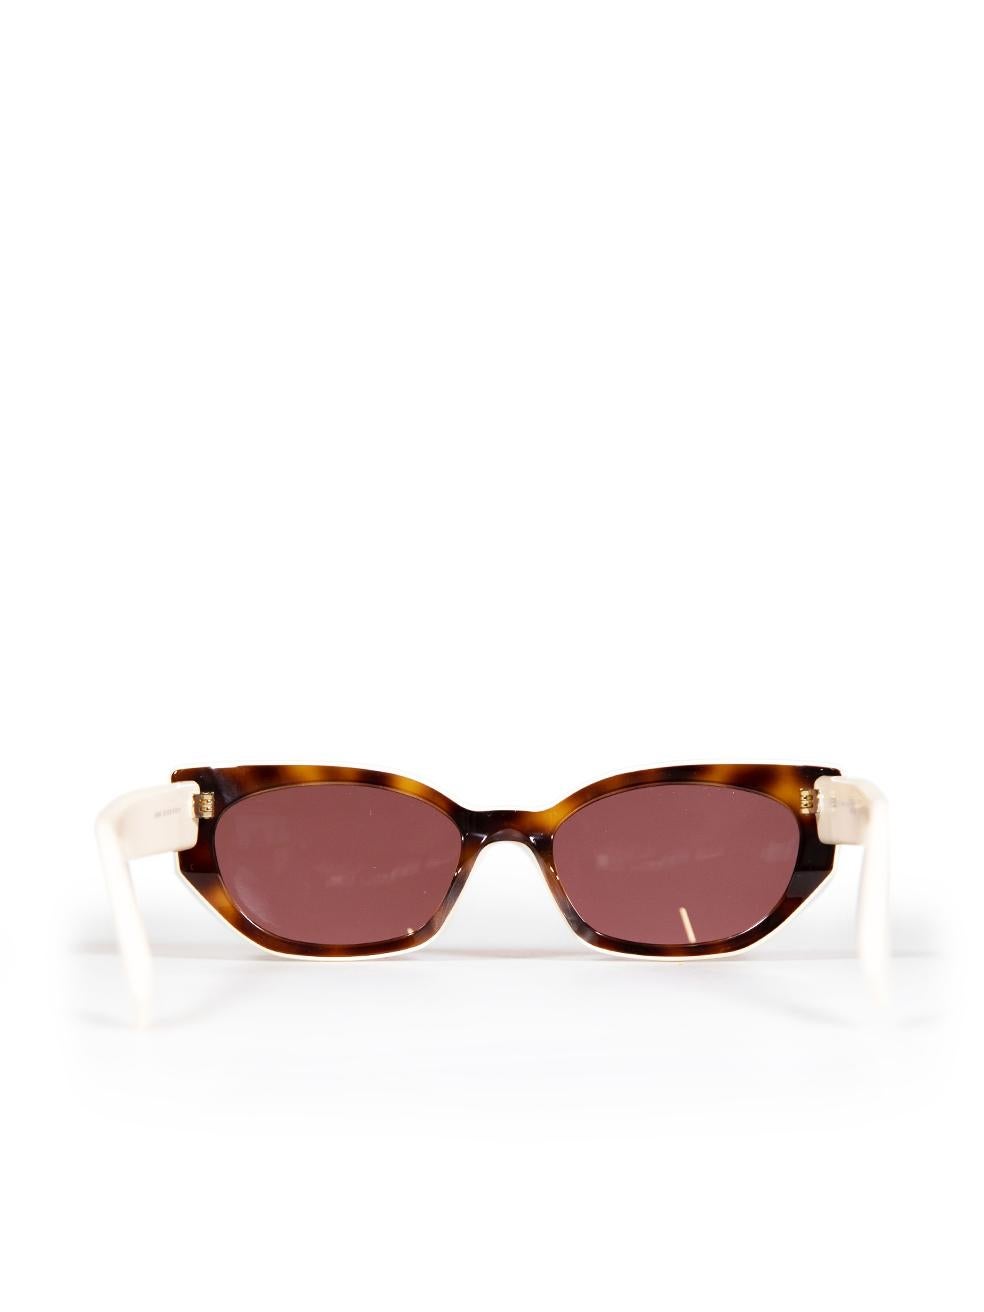 Women's Fendi Blonde Havana Tortoiseshell Sunglasses For Sale